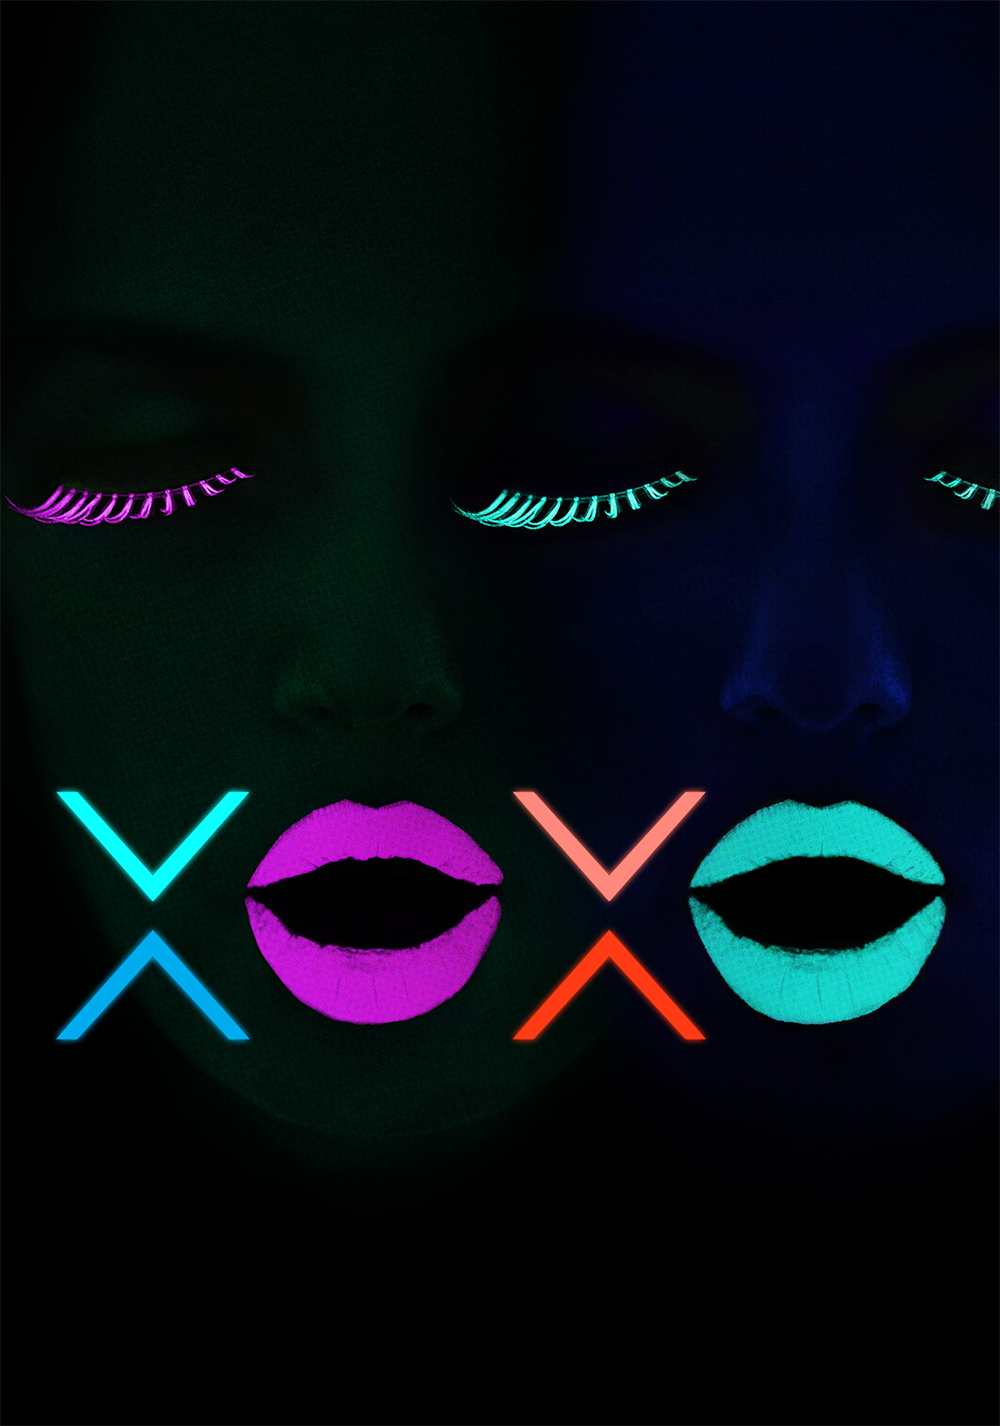 netflix - XOXO : musique à fond, musique à forme xoxo 57c41a37c5ea0